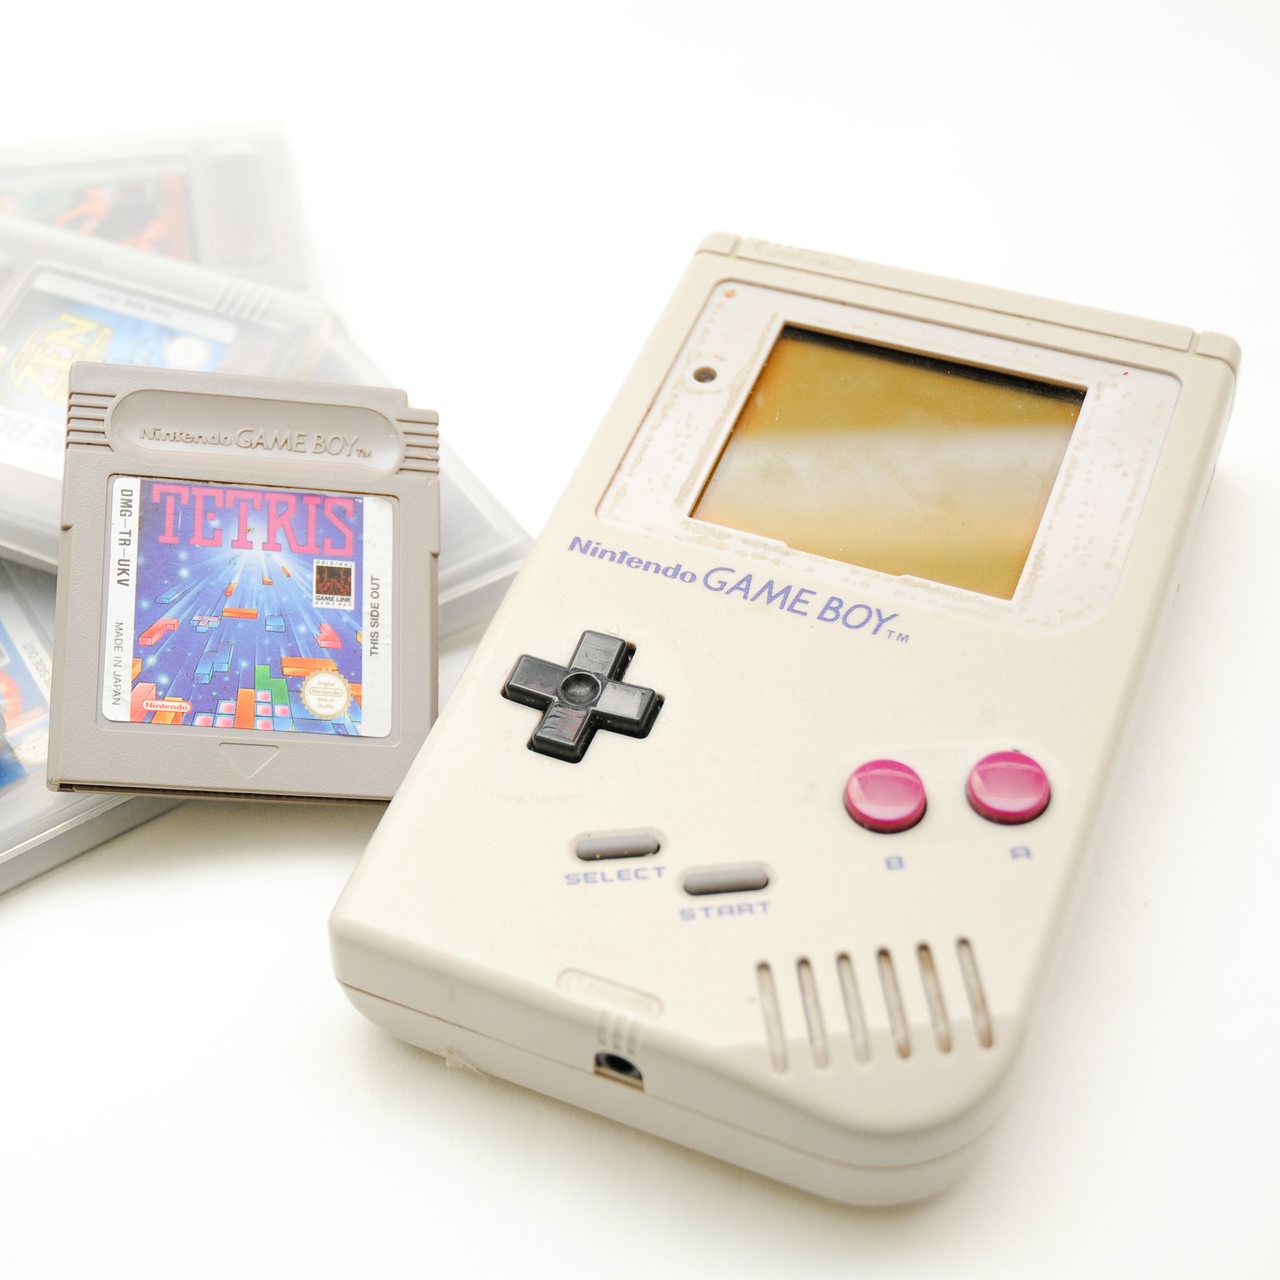 21. April 1989: Premiere für den Game Boy